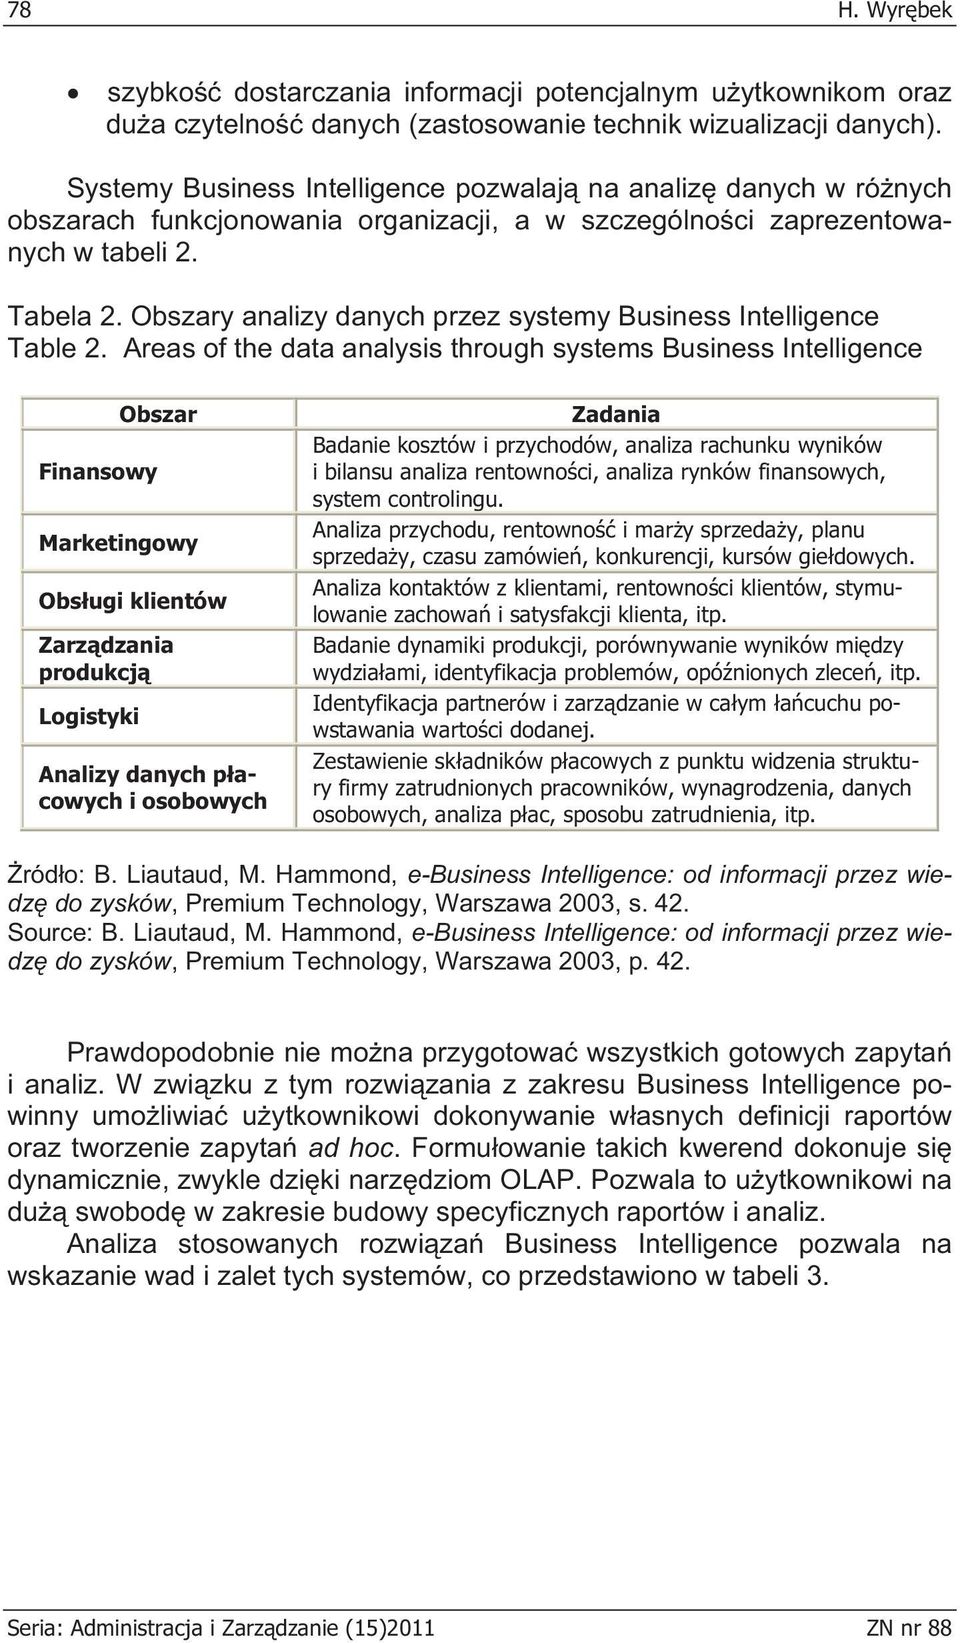 Obszary analizy danych przez systemy Business Intelligence Table 2.